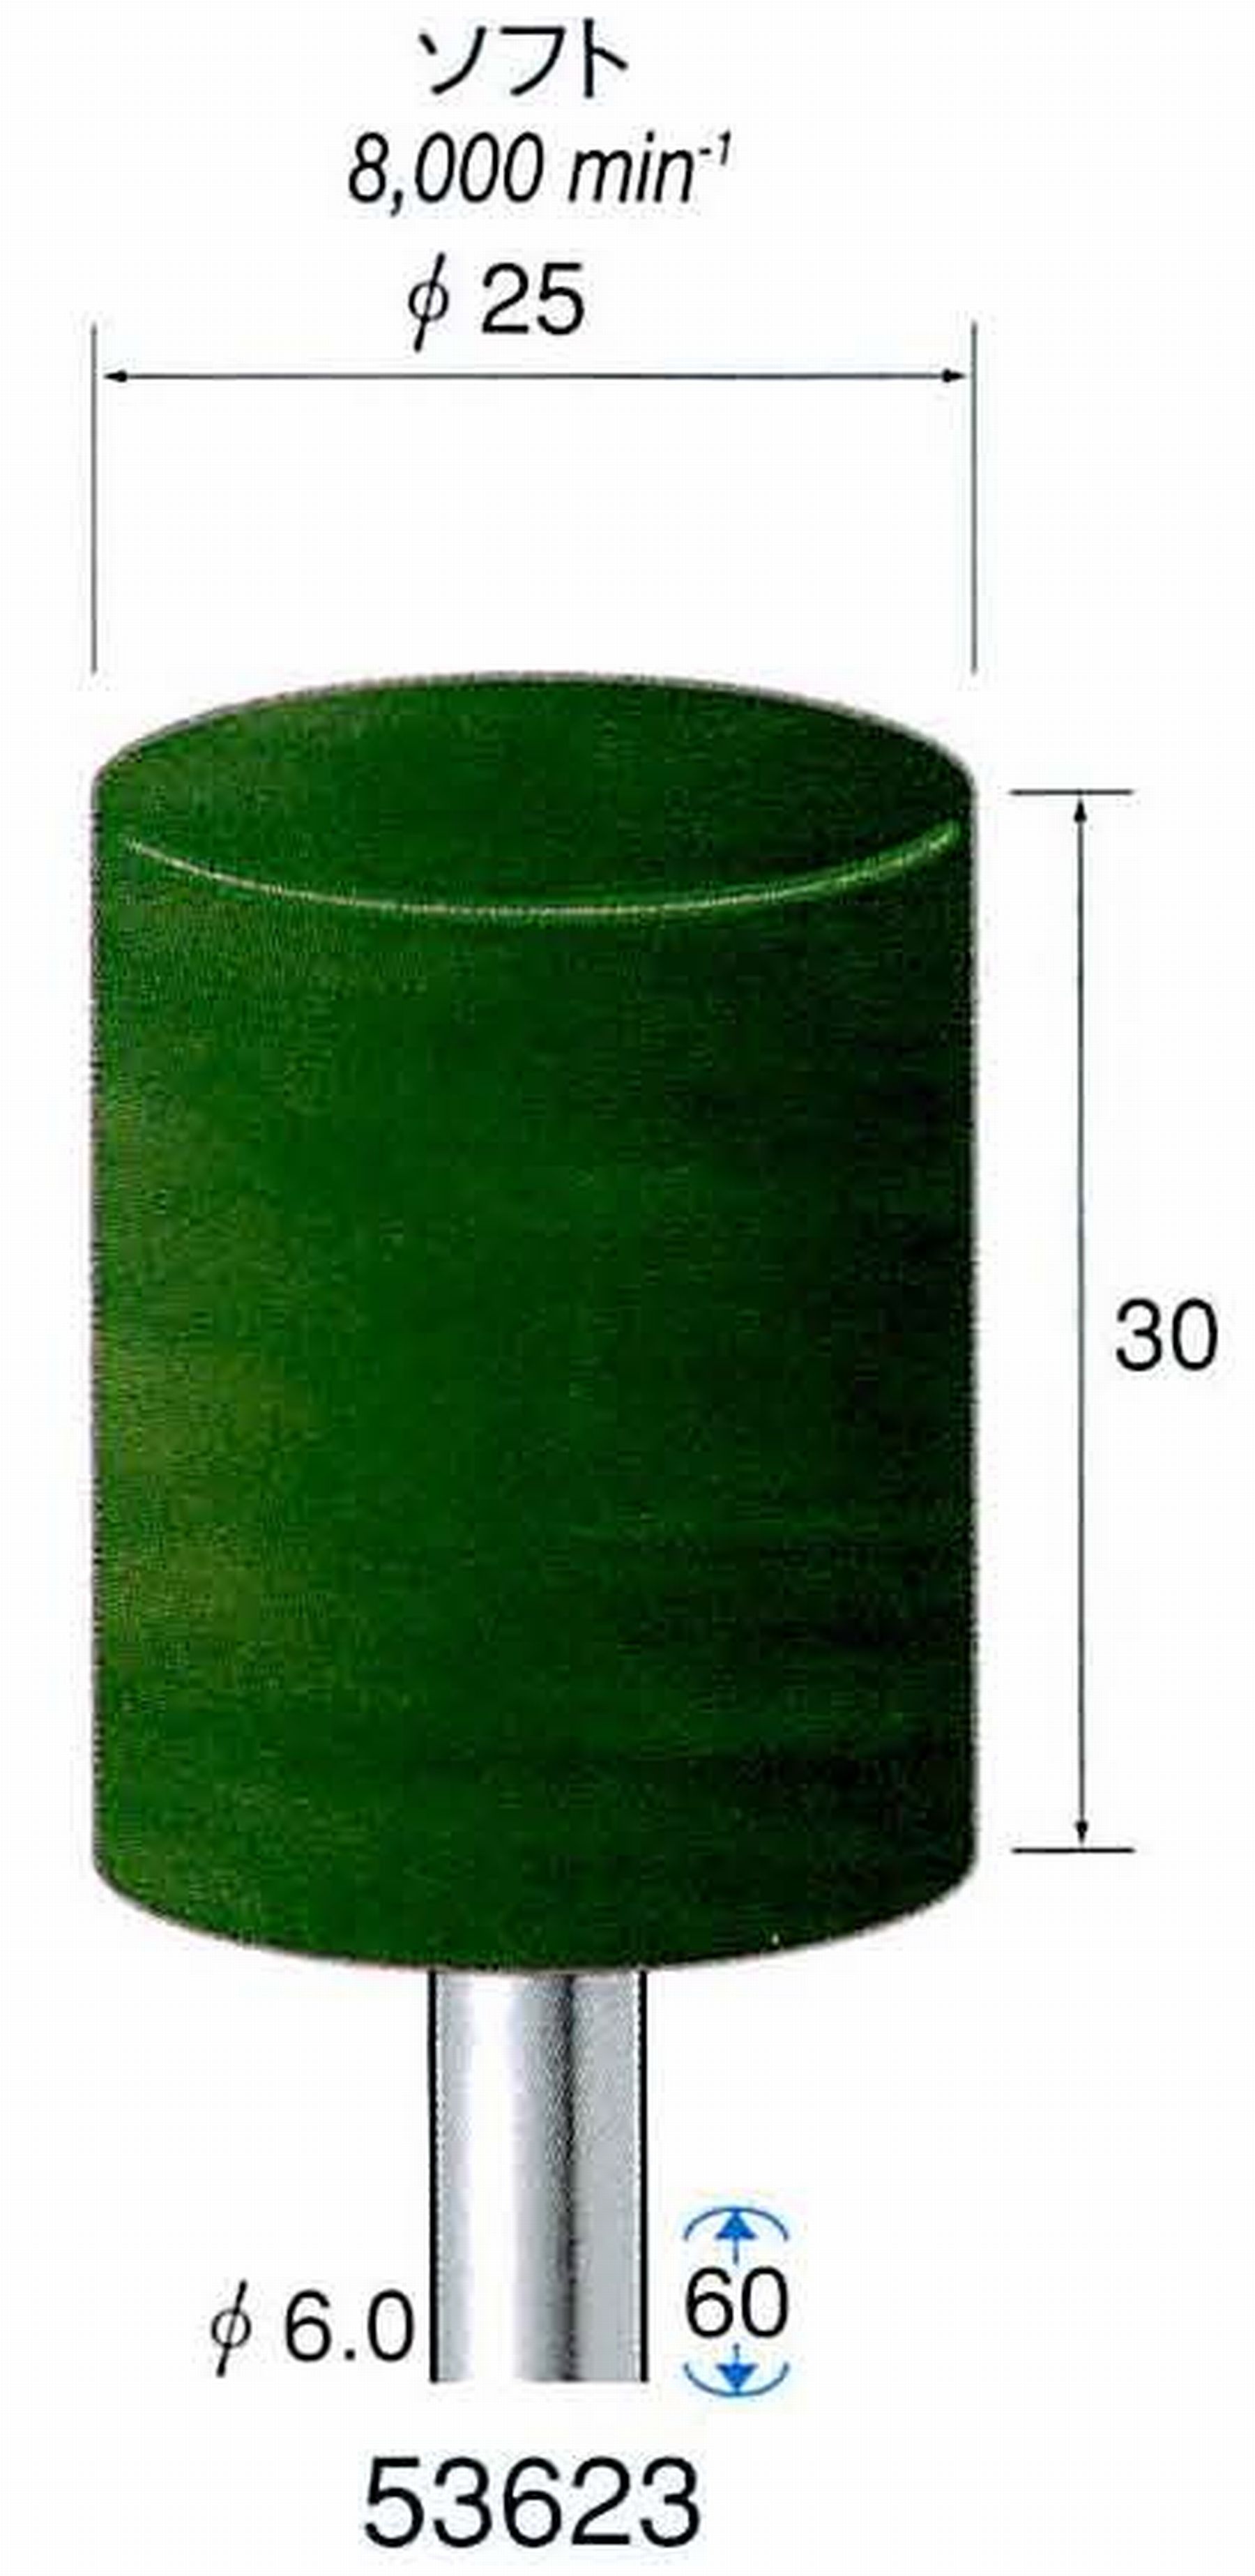 ナカニシ/NAKANISHI グリーンフェルトバフ ソフト(研磨材入り) 酸化クロム(青棒)含浸タイプ 軸径(シャンク)φ6.0mm 53623